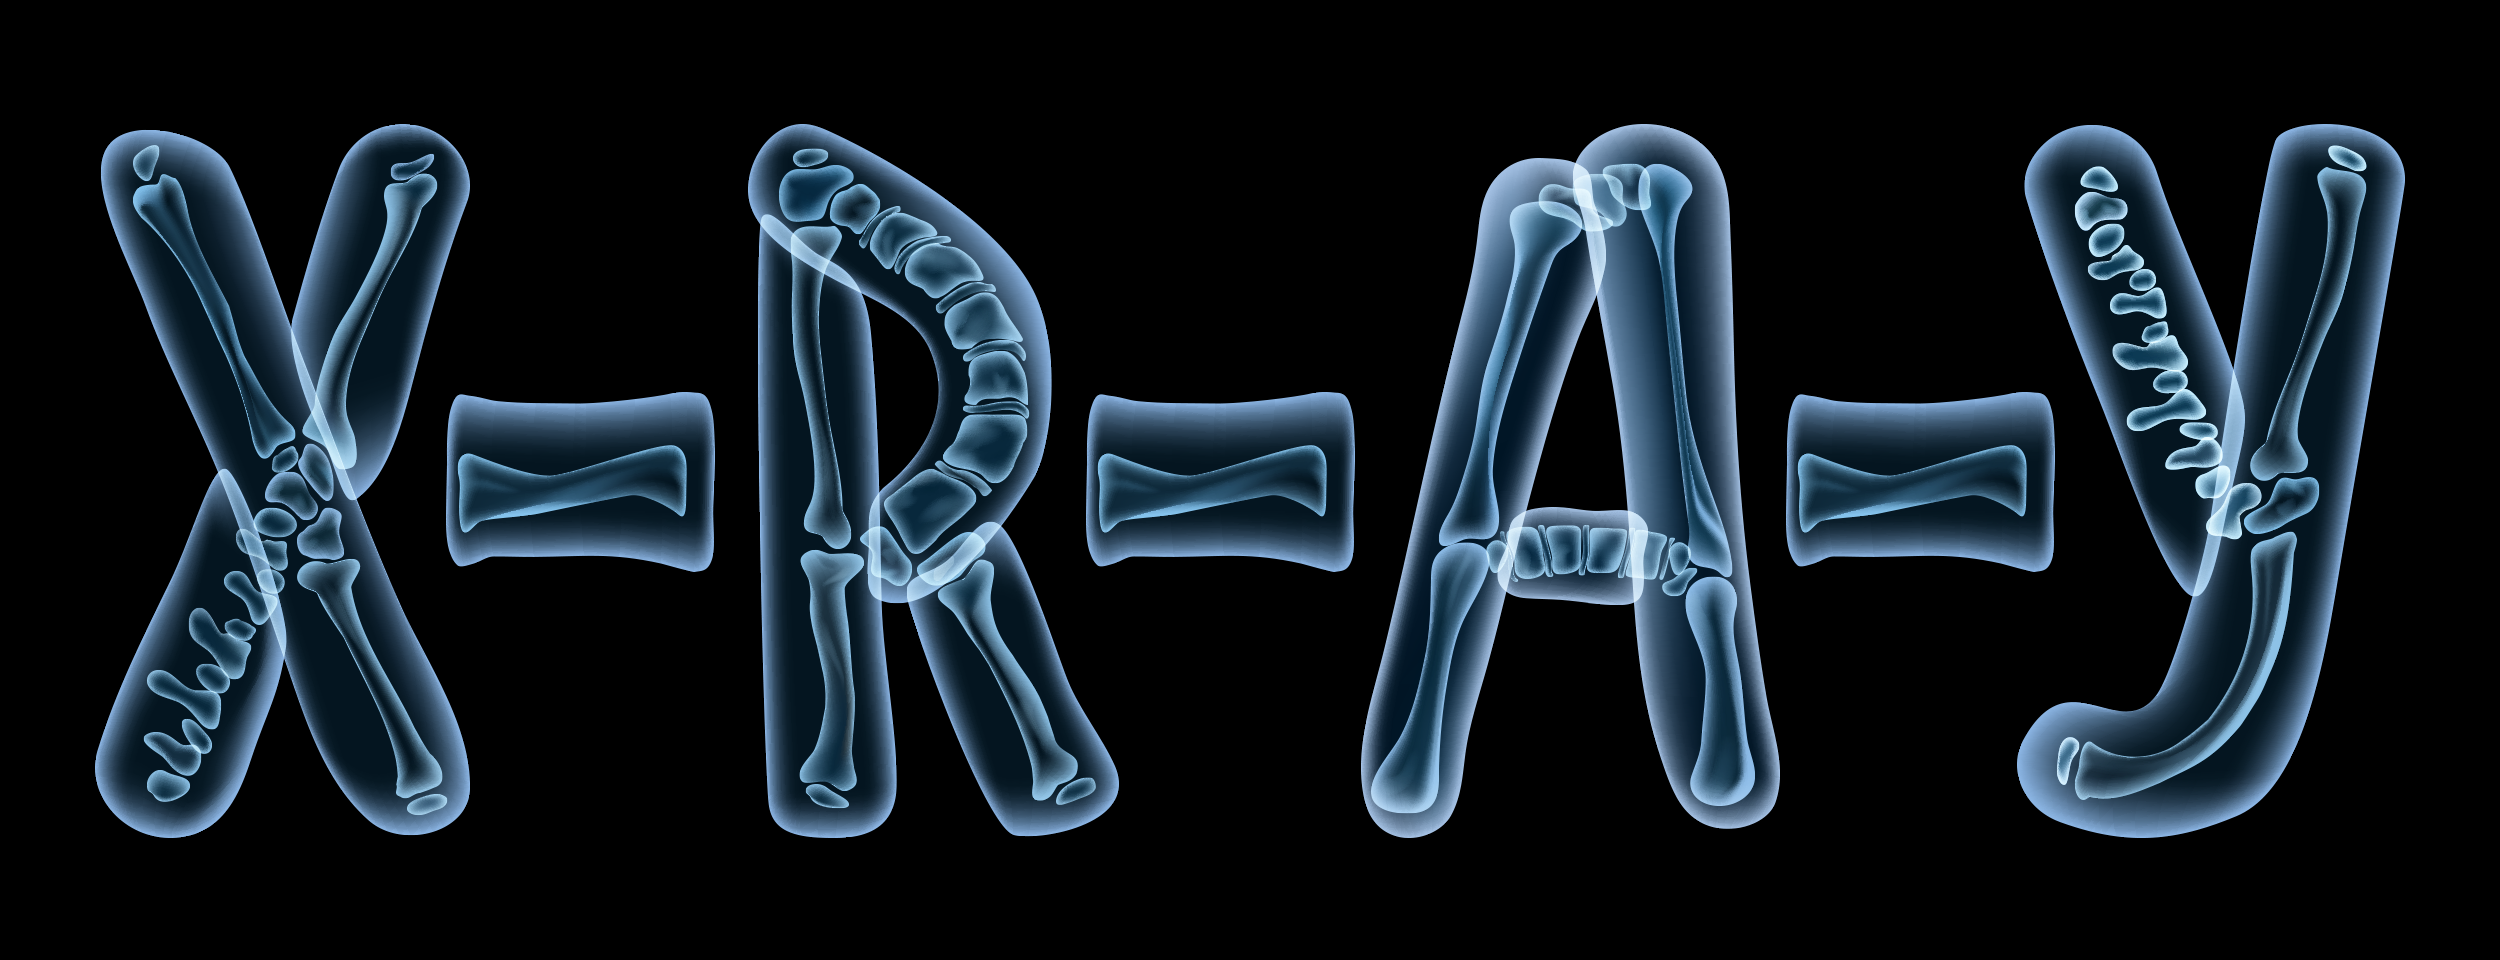 دليلك الشامل عن مكونات جهاز الأشعة السينية (X ray) .